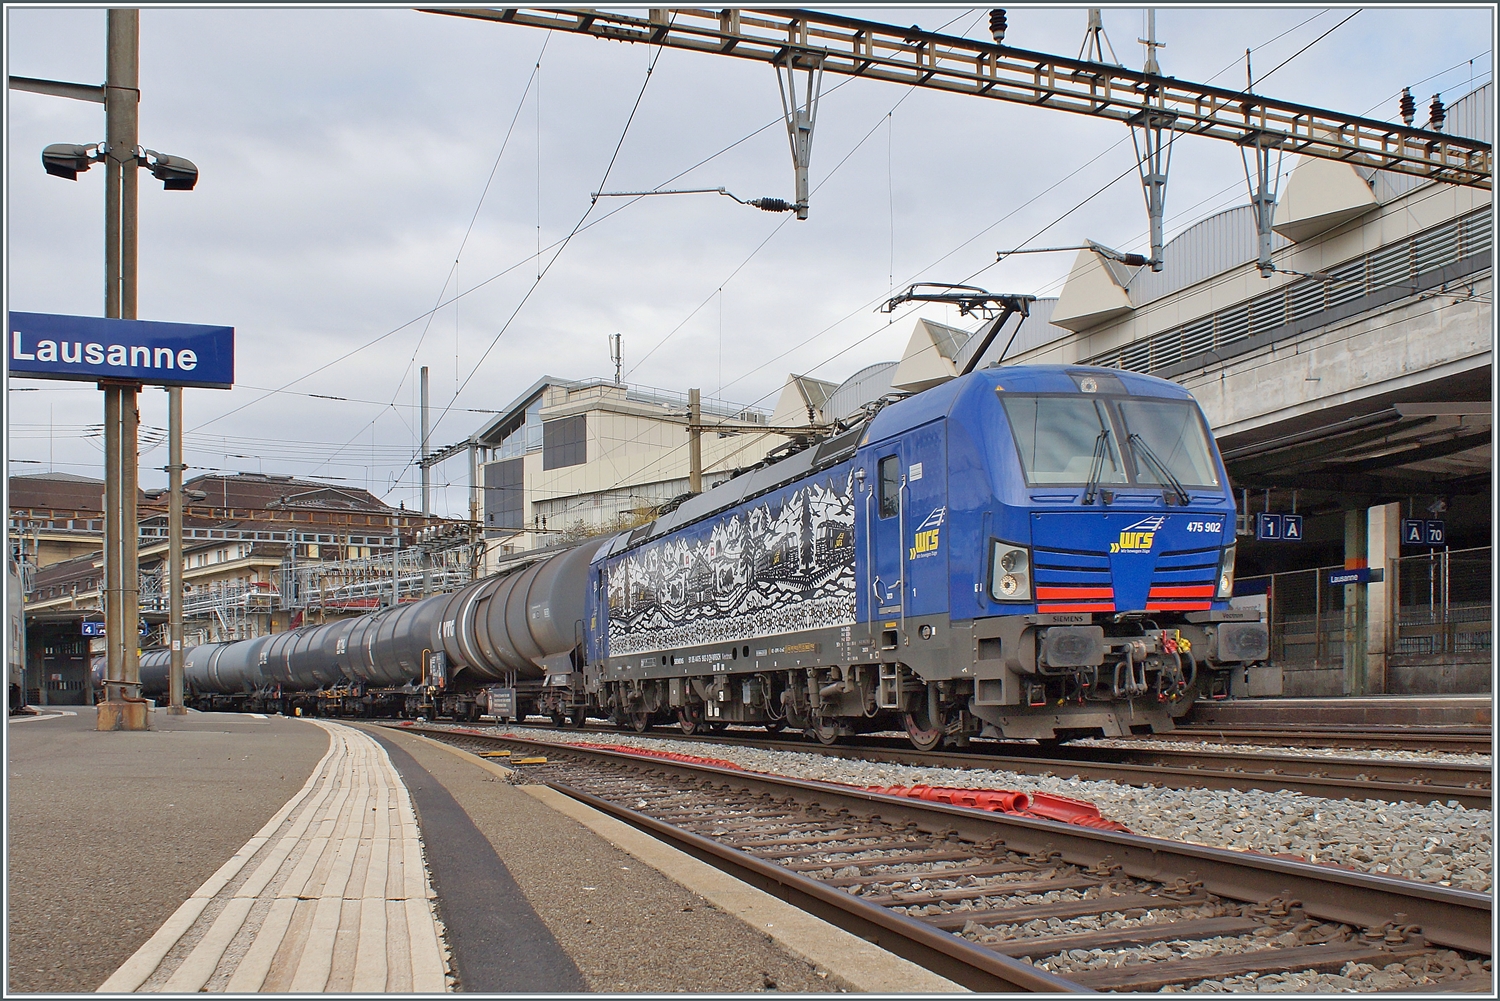 Die WRS Ae 475 902 (91 85 4475 902-3 CH-WRS) wartet in Lausanne mit einem Oel-Zug auf die Weiterfahrt in Richtung Wallis. 

17. Februar 2023